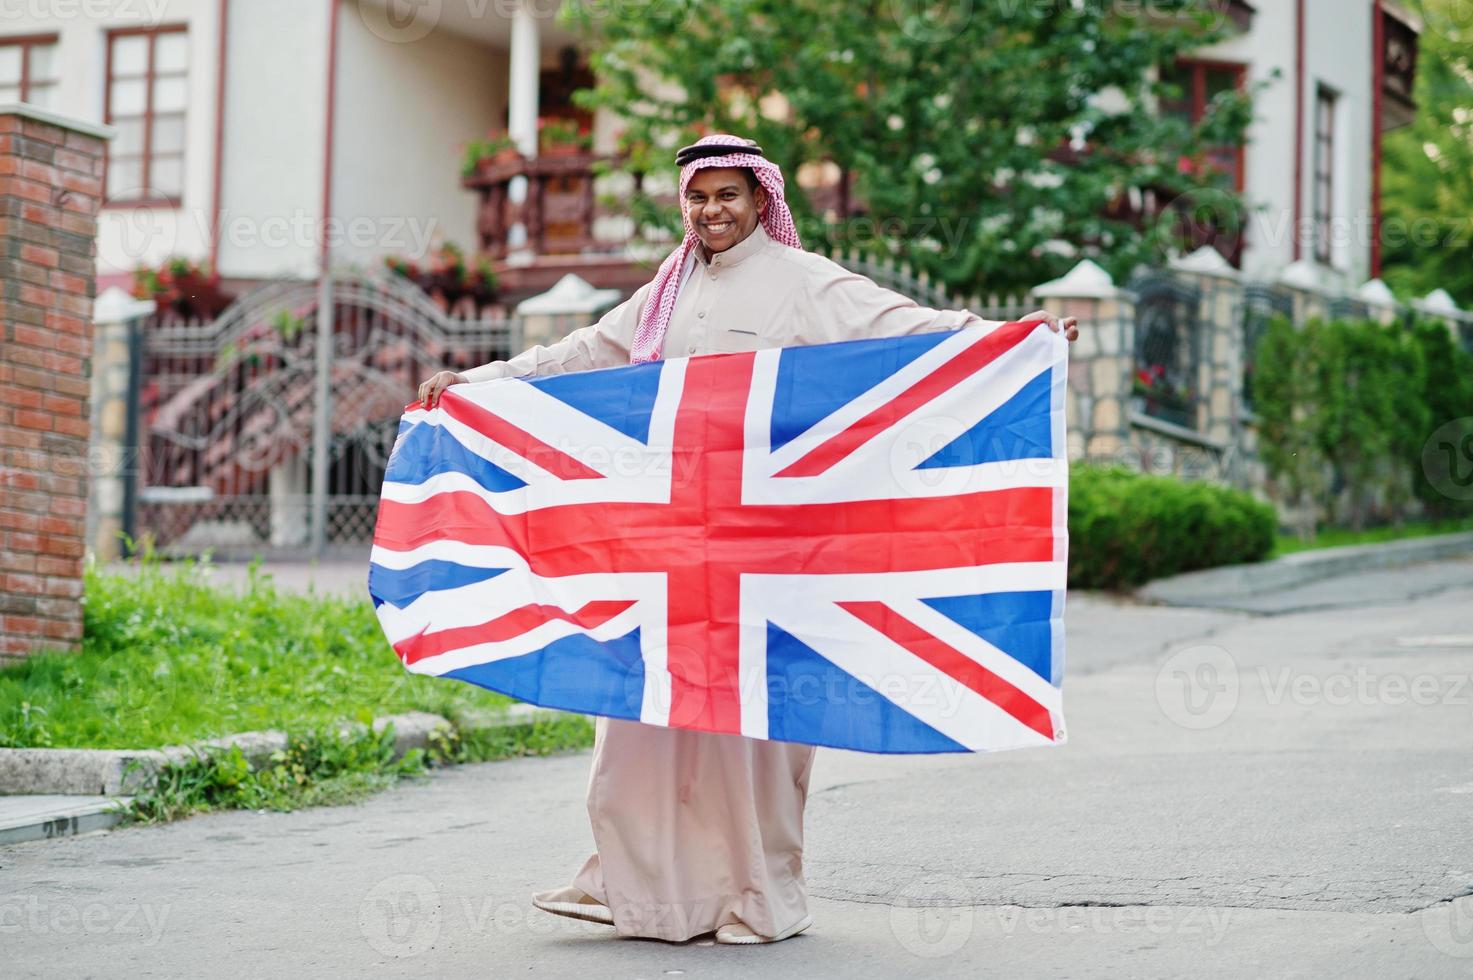 mellanöstern arab man poserade på gatan med Storbritanniens flagga. England och arabiska länder koncept. foto